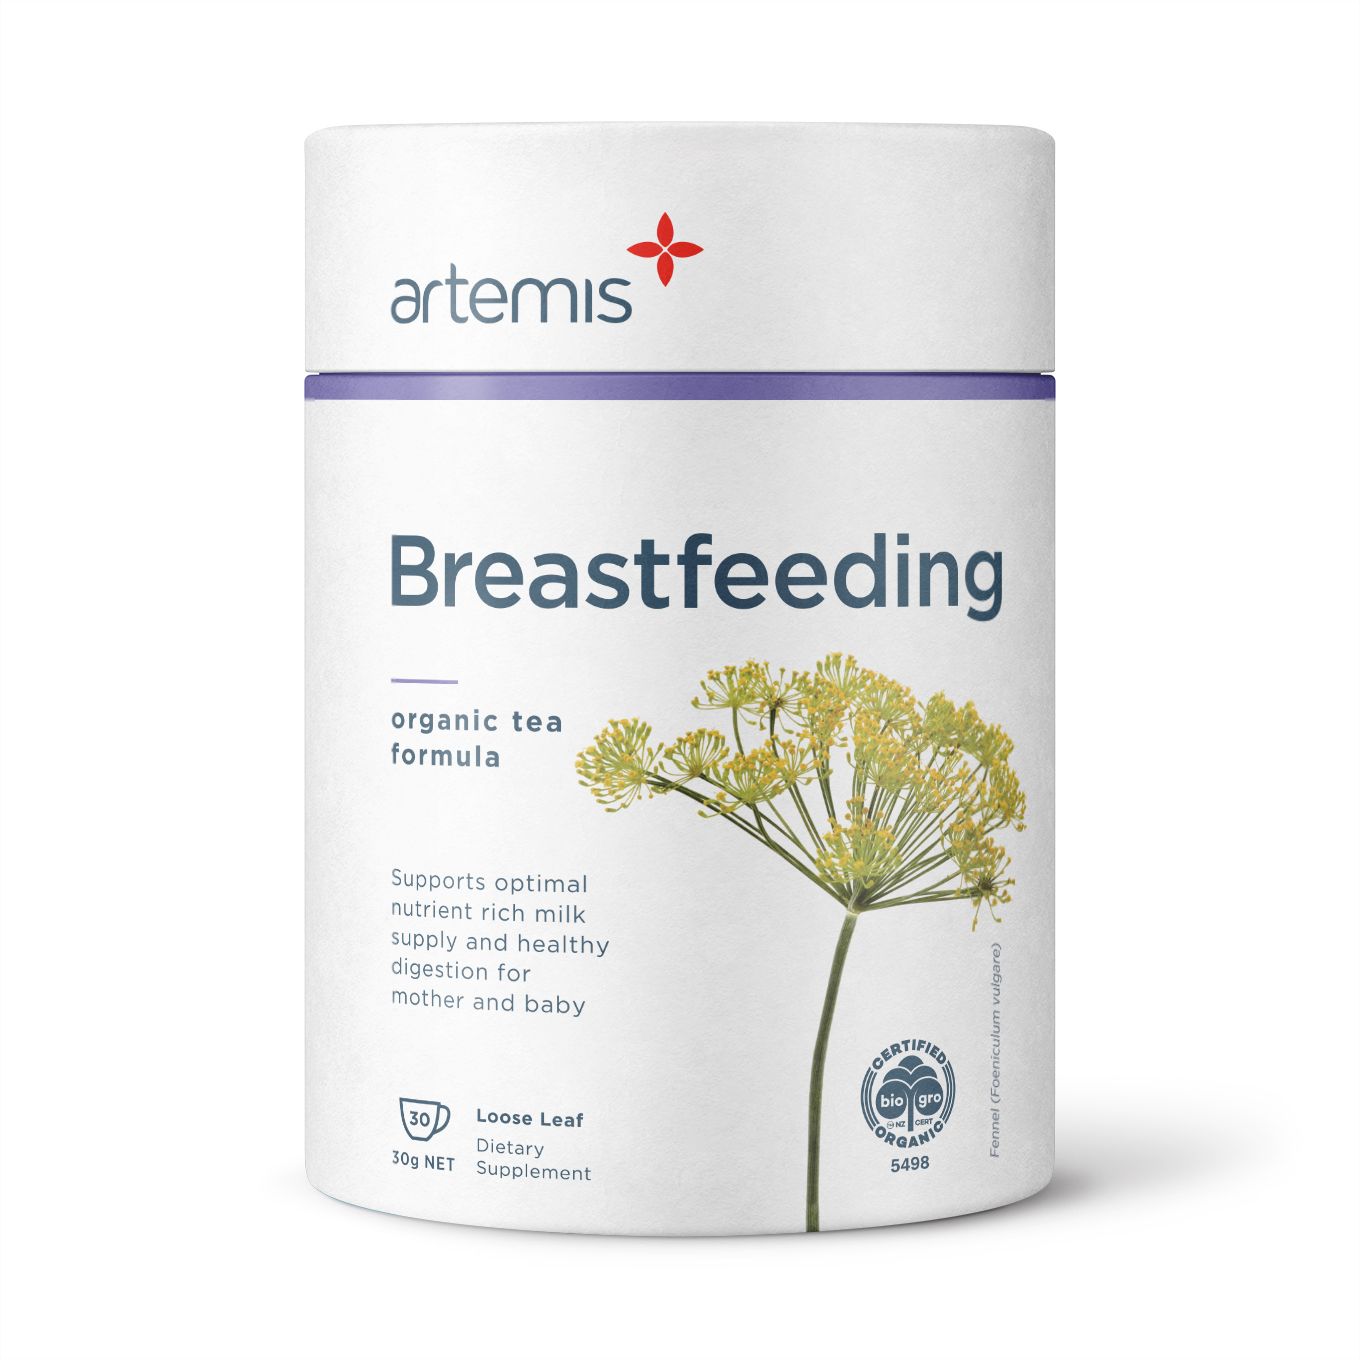 Artemis Breastfeeding Tea 